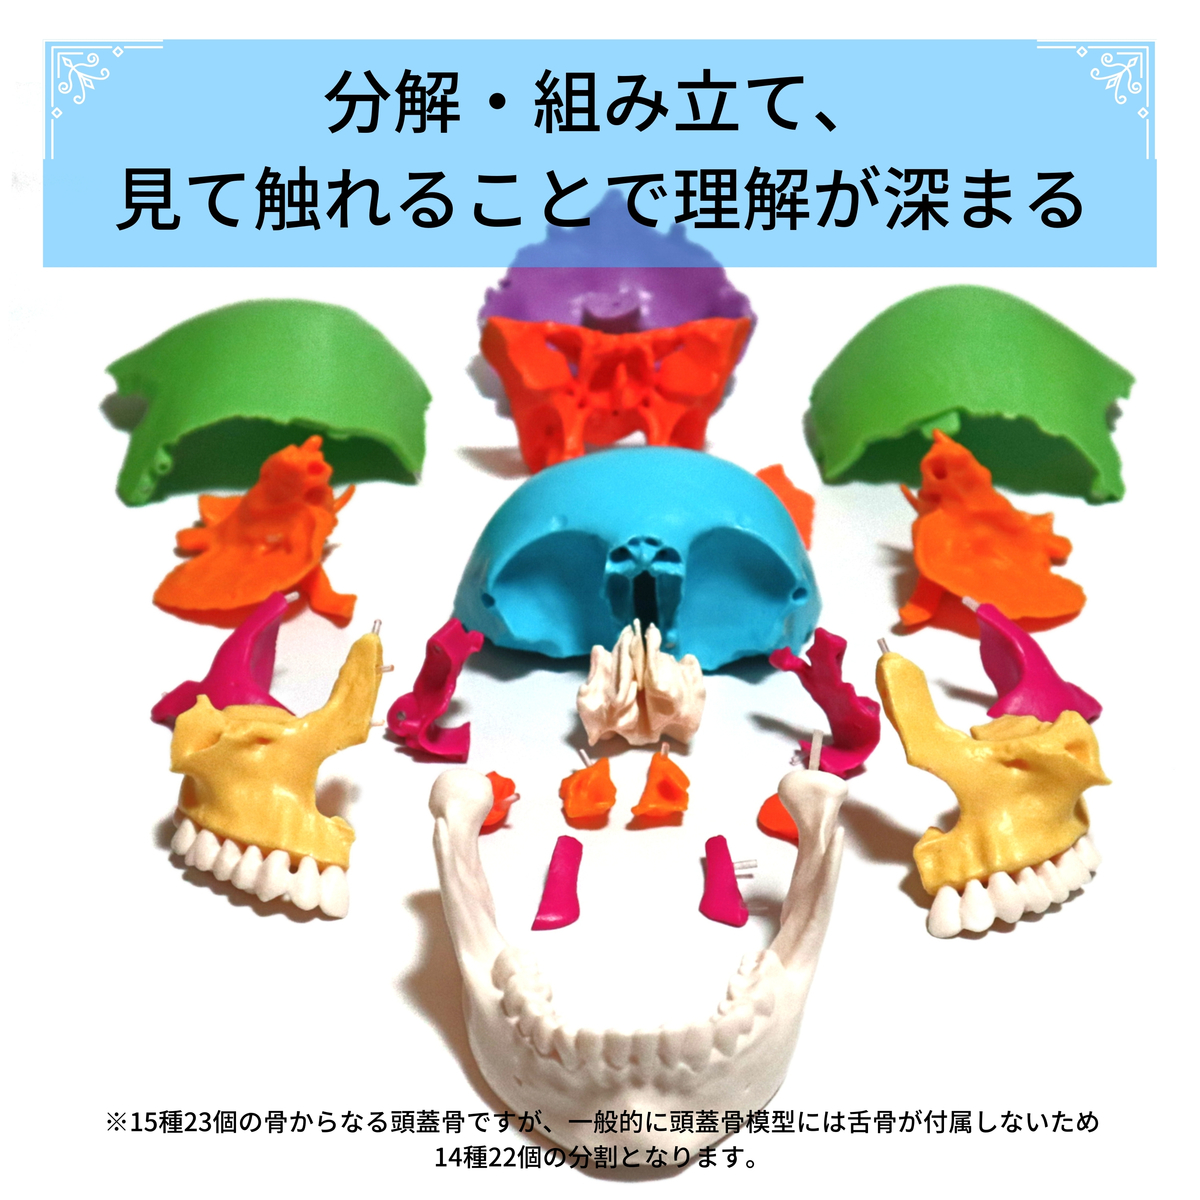 実物大 22分割 日本語の解説書で頭蓋骨の構造が学べる頭蓋骨模型 解剖学 オステオパシー 頭蓋治療 分解 組立 脱着 蝶形骨 骨格標本 人体模型 1 1スケール 1 1 等身大 頭蓋骨モデル Umu Ac Ug